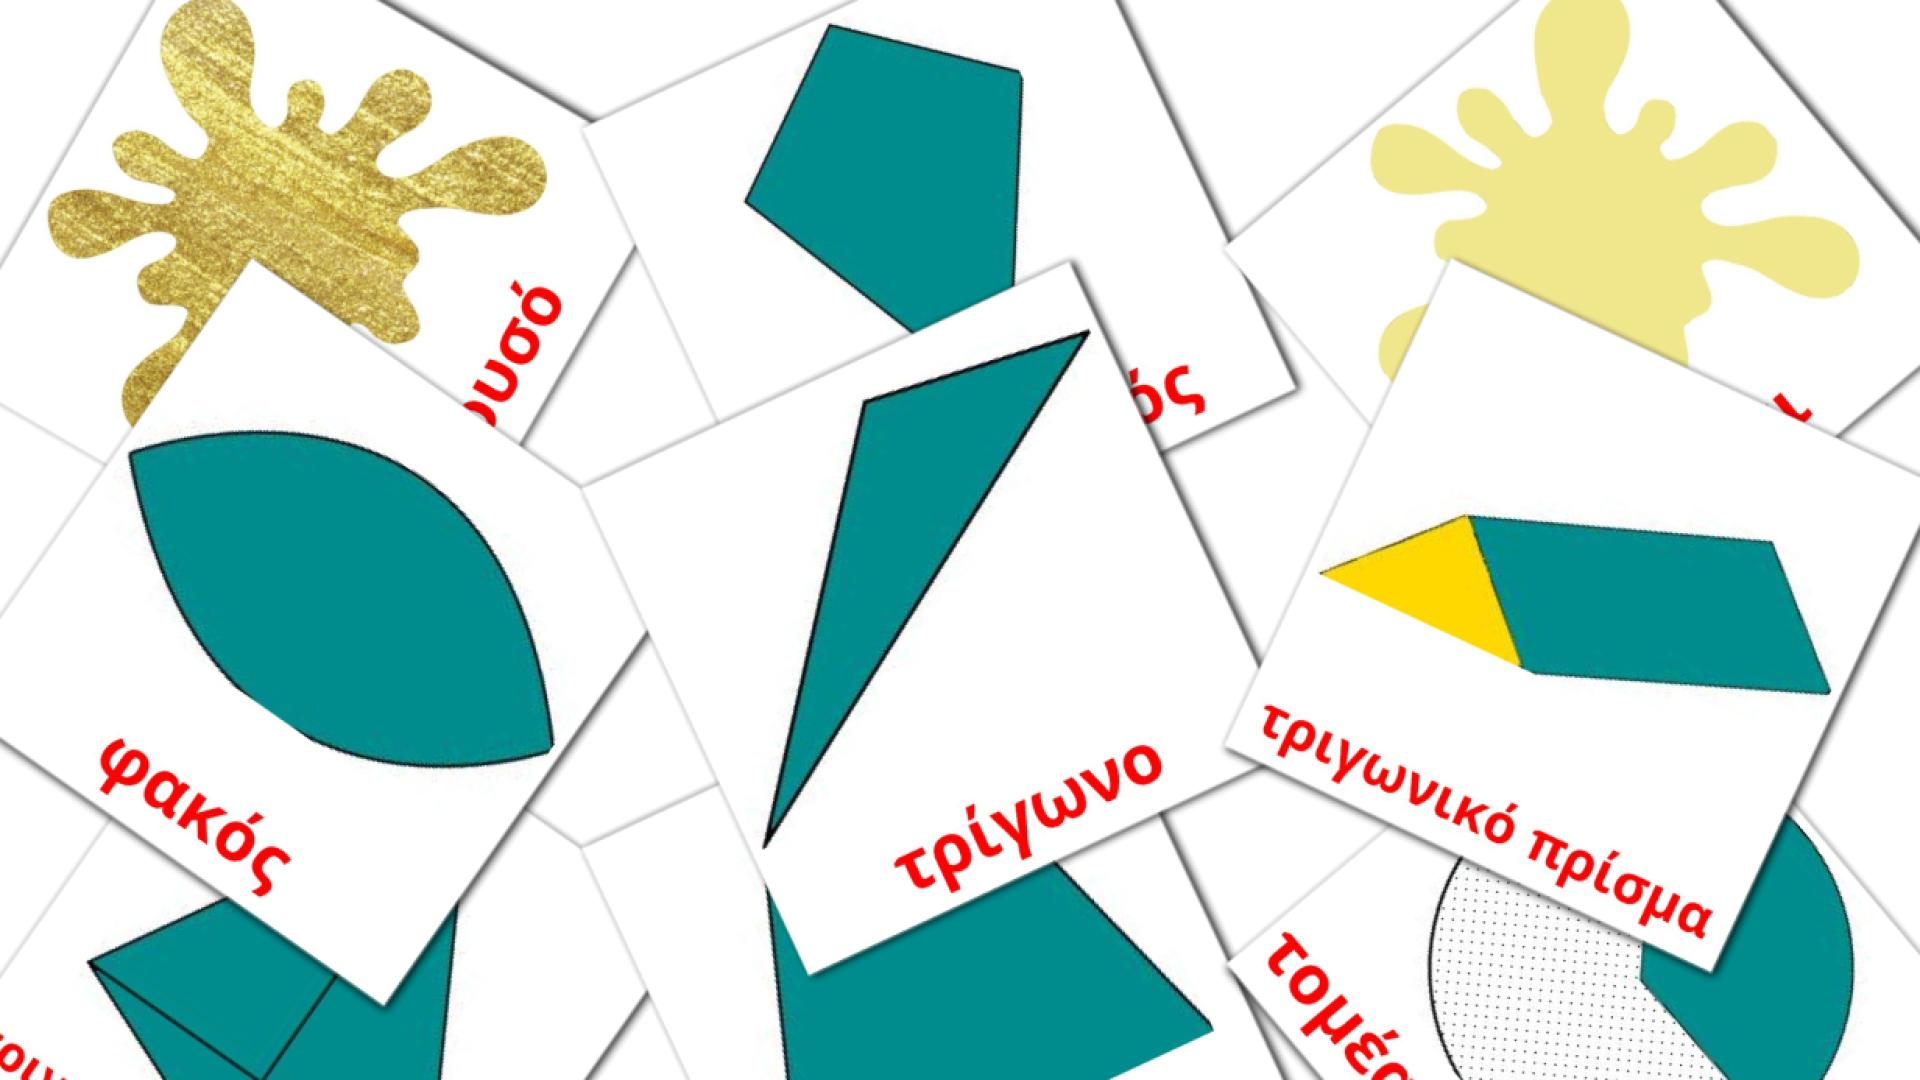 Χρώματα και σχήματα greek vocabulary flashcards